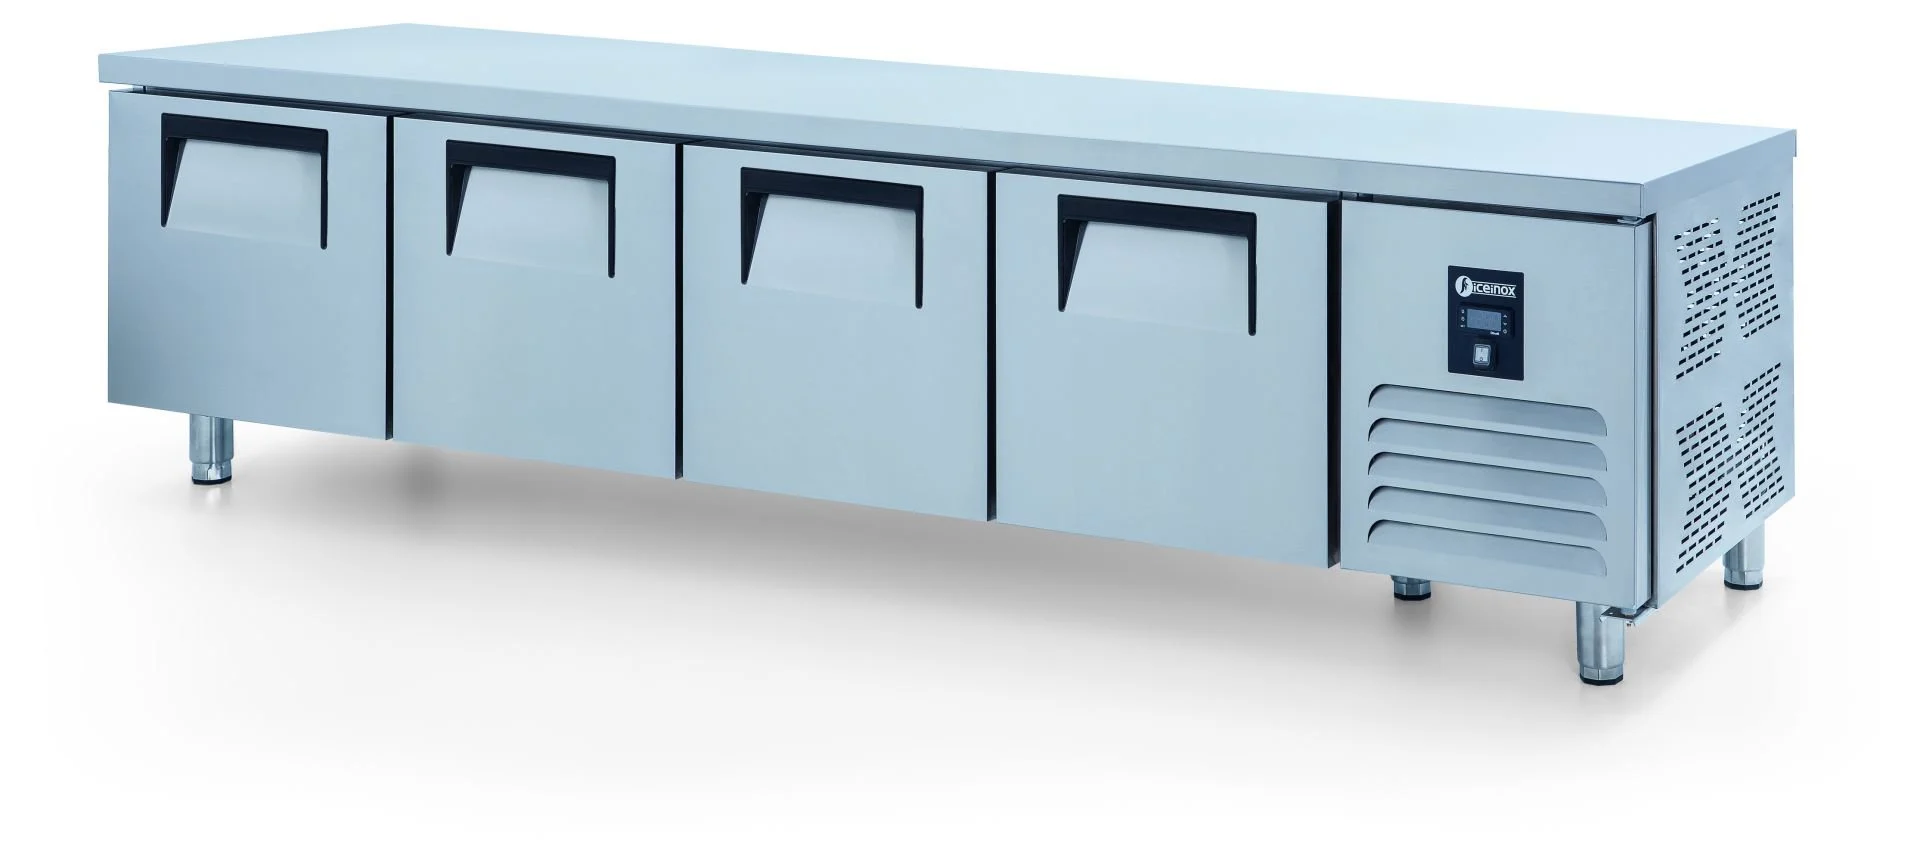 ICEINOX - Iceinox UTS 450 CR Pişirici Altı Buzdolabı, 4 Kapılı, 450 L